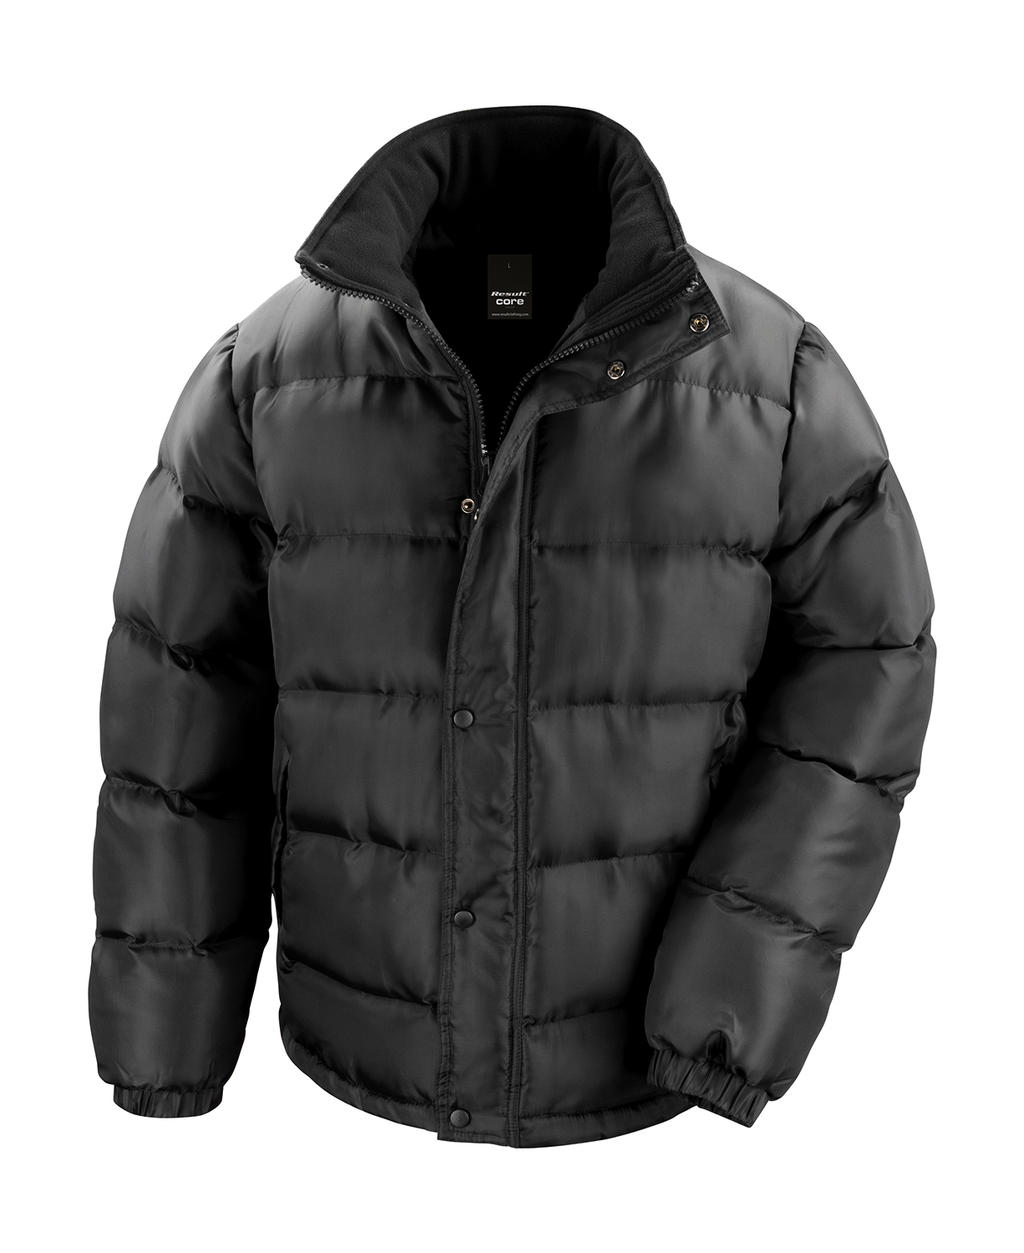  Nova Lux Padded Jacket in Farbe Black